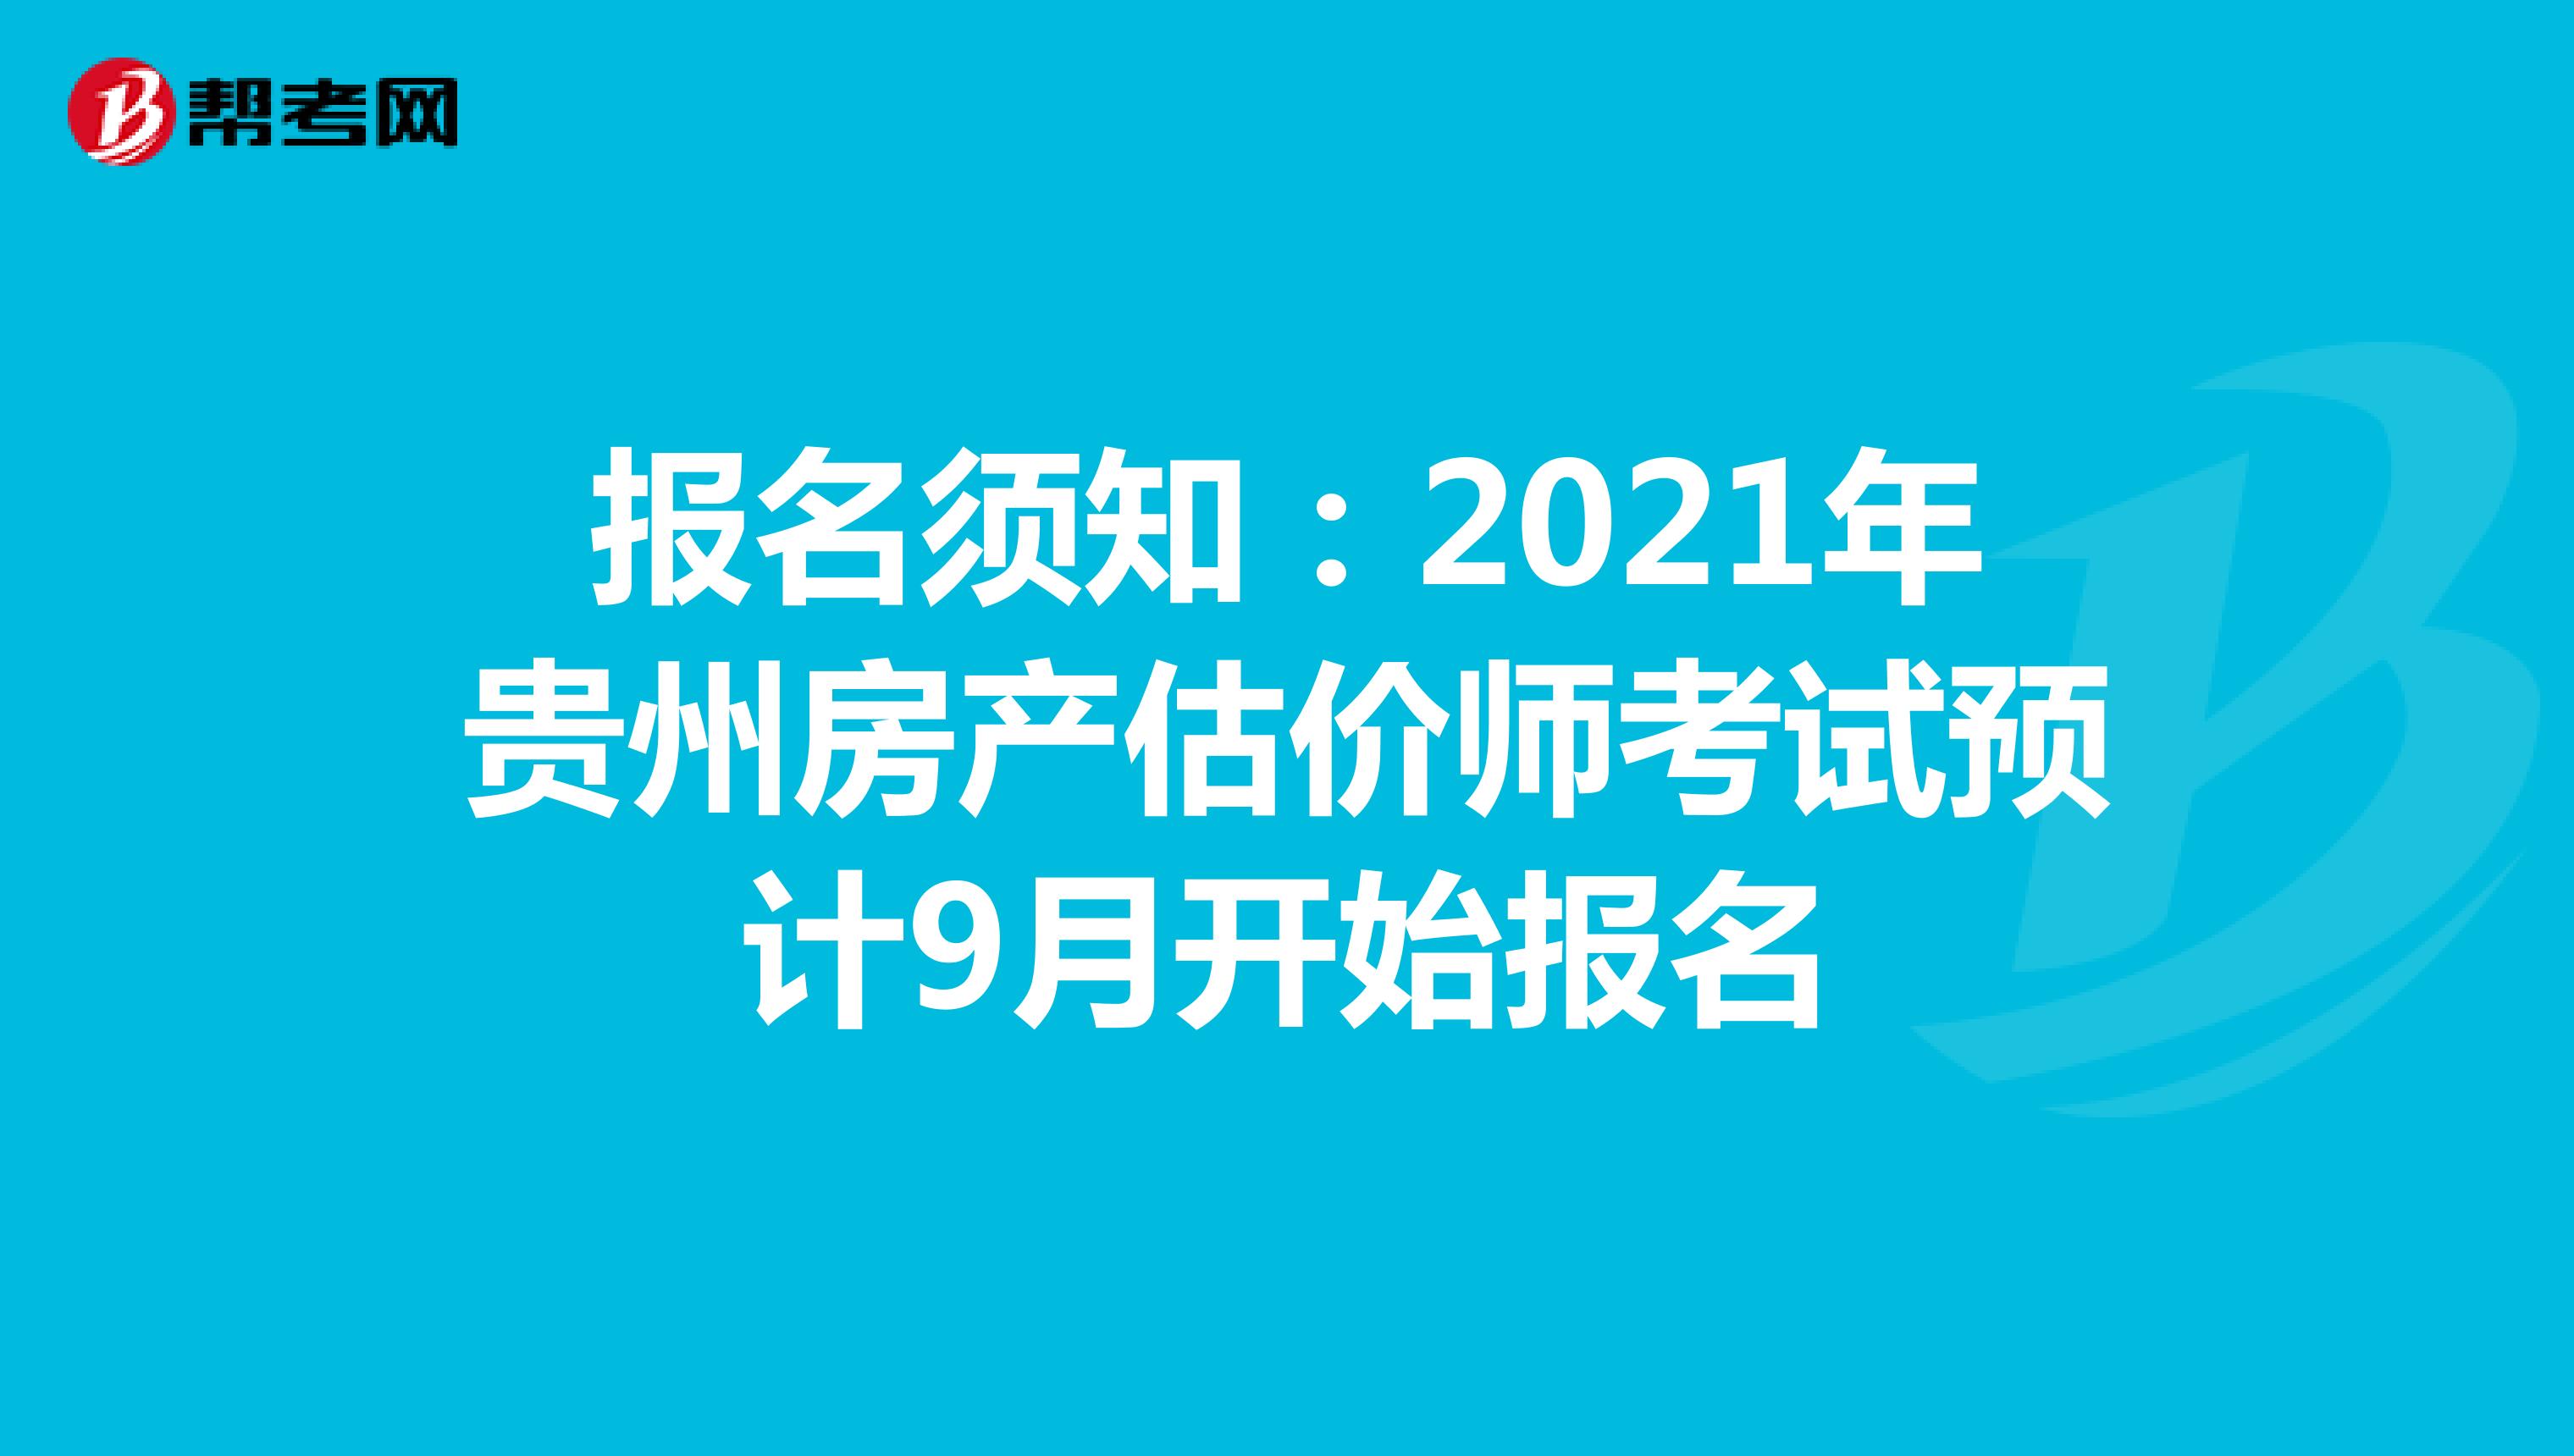 报名须知：2021年贵州房产估价师考试预计9月开始报名